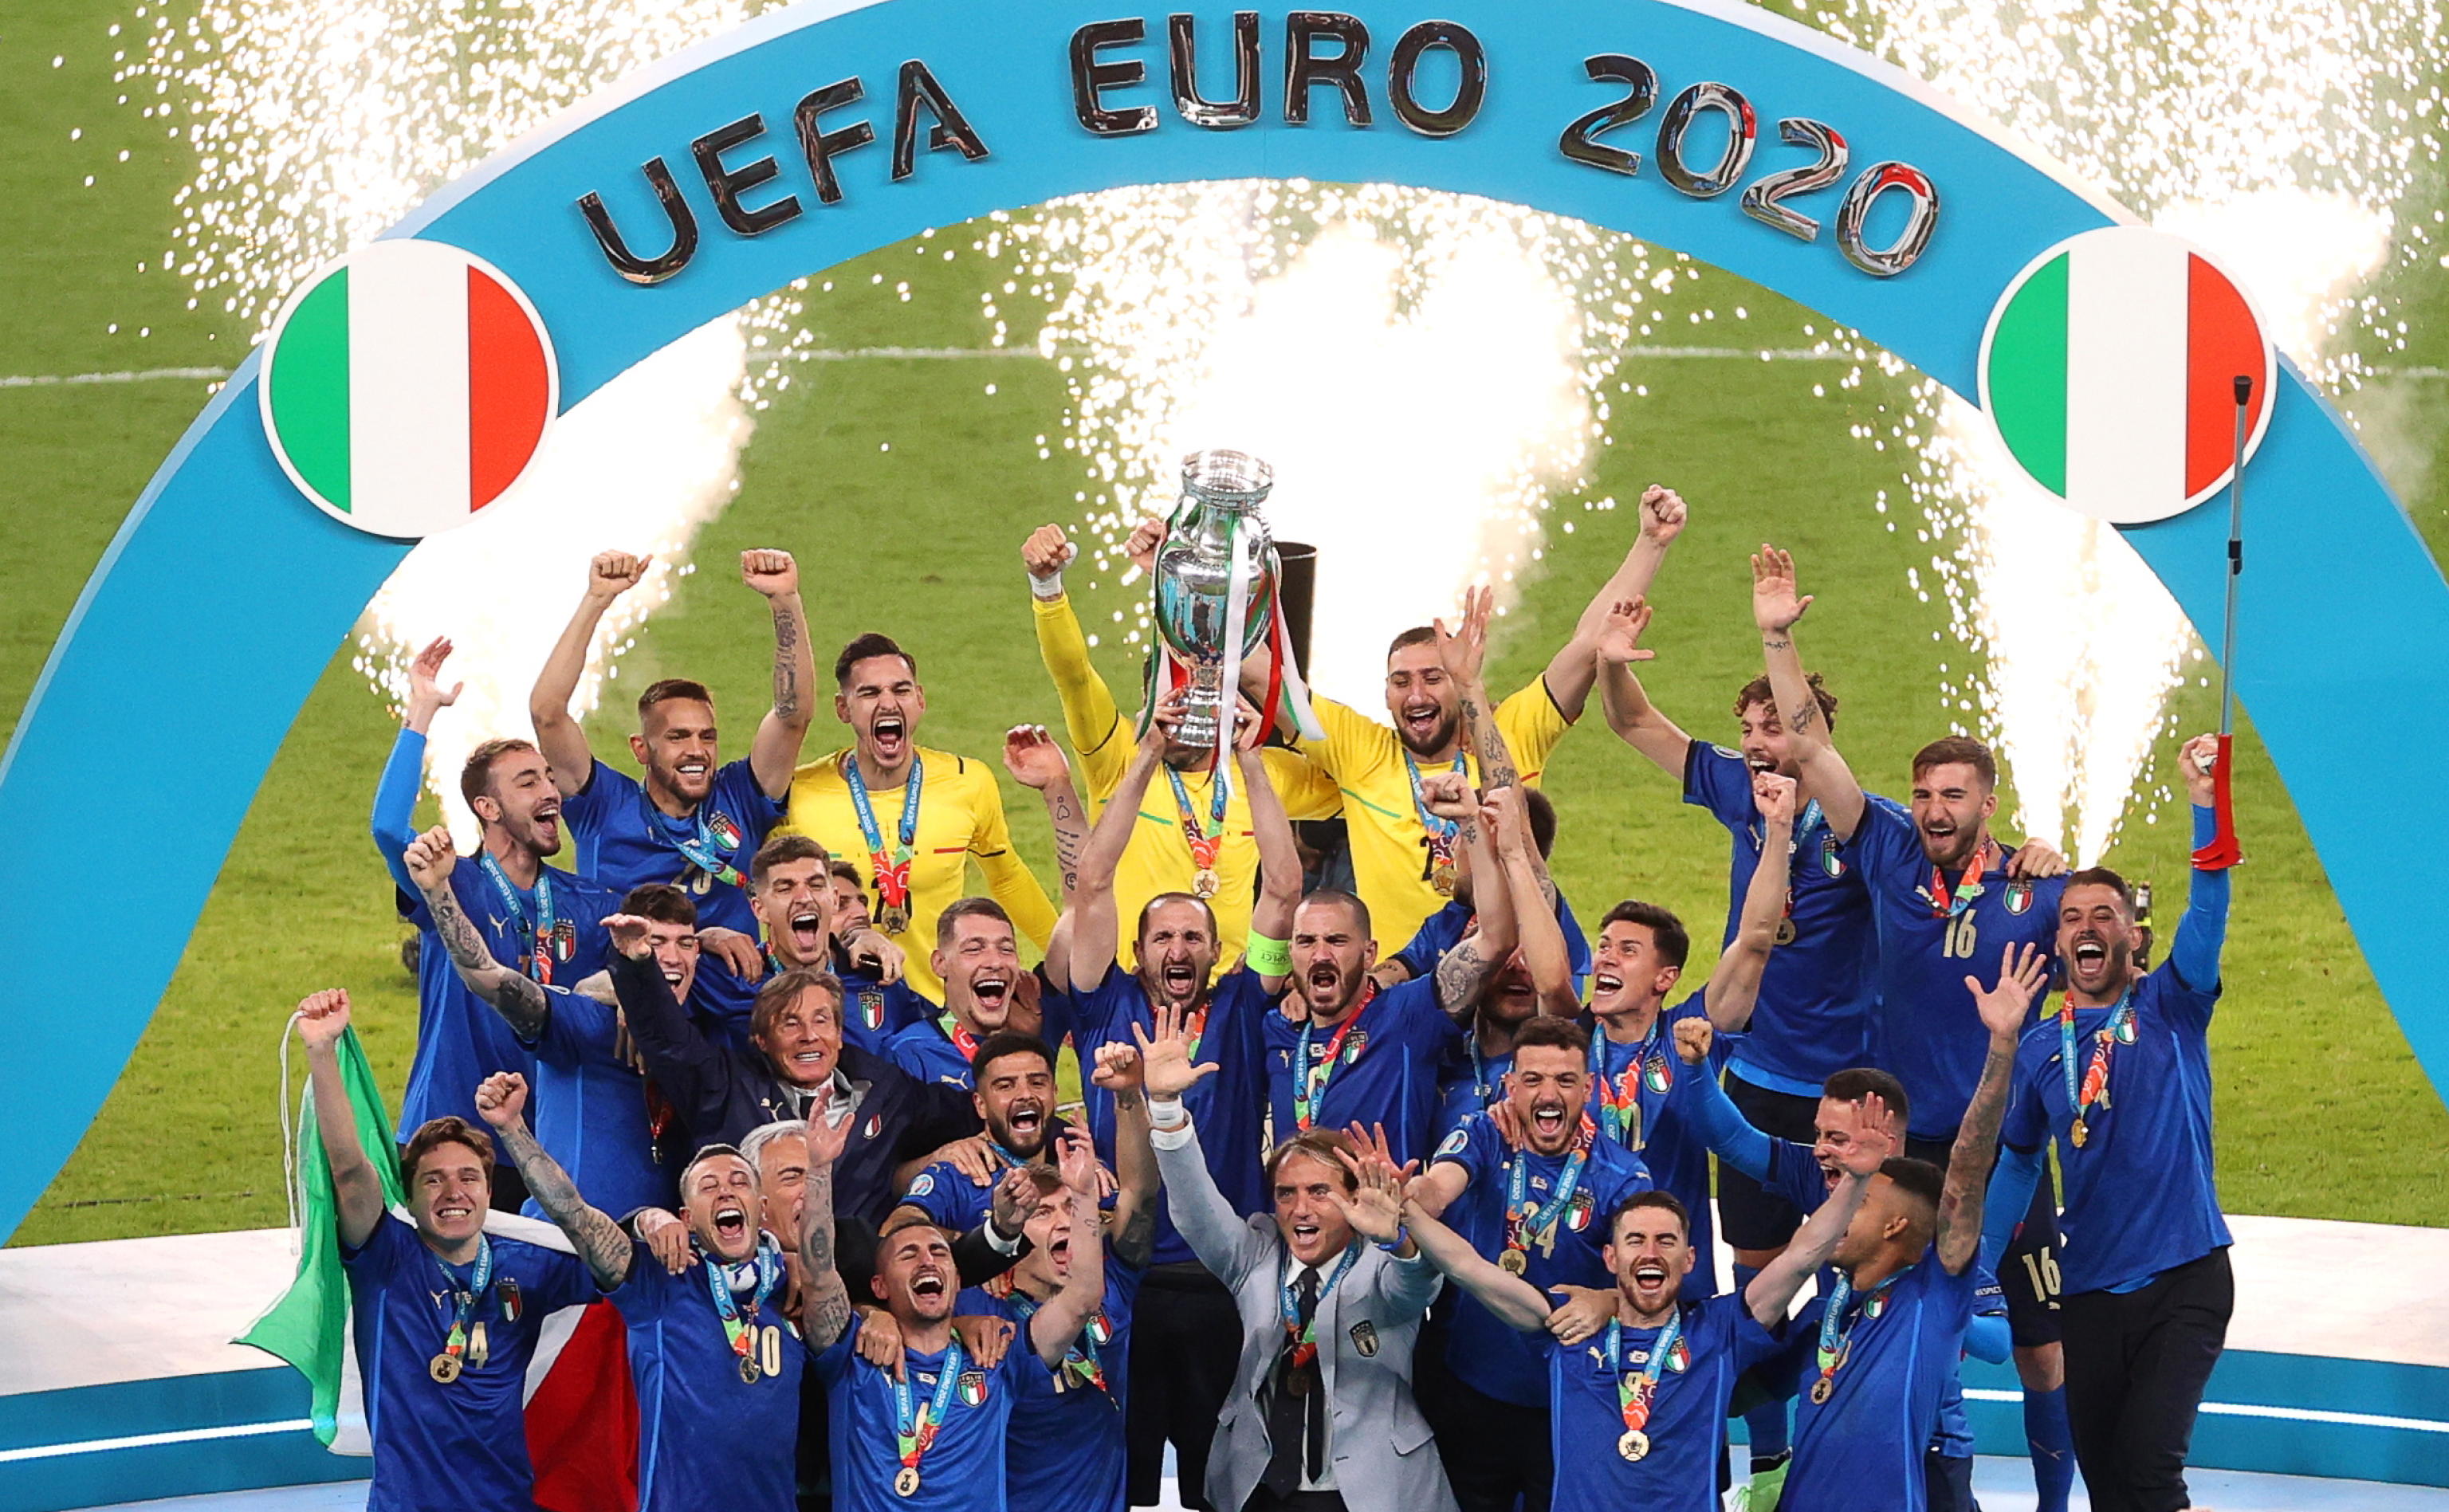 Campioni d'Europa! Inghilterra domata, gli azzurri di Mancini espugnano Wembley ai rigori